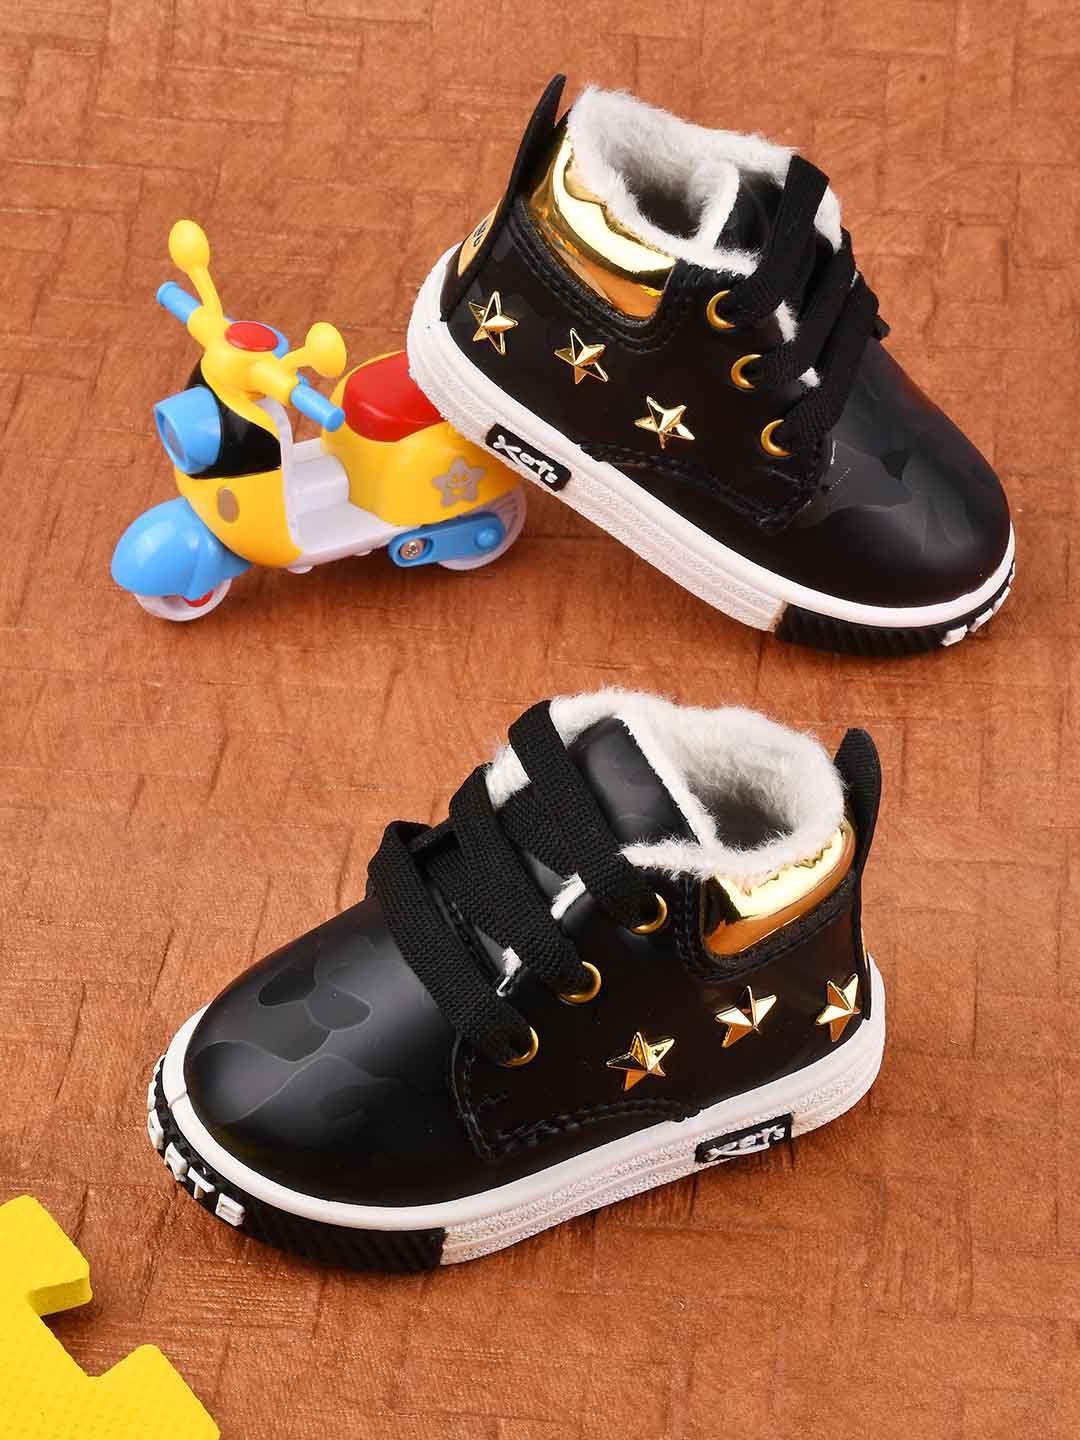 kats unisex kids printed sneakers